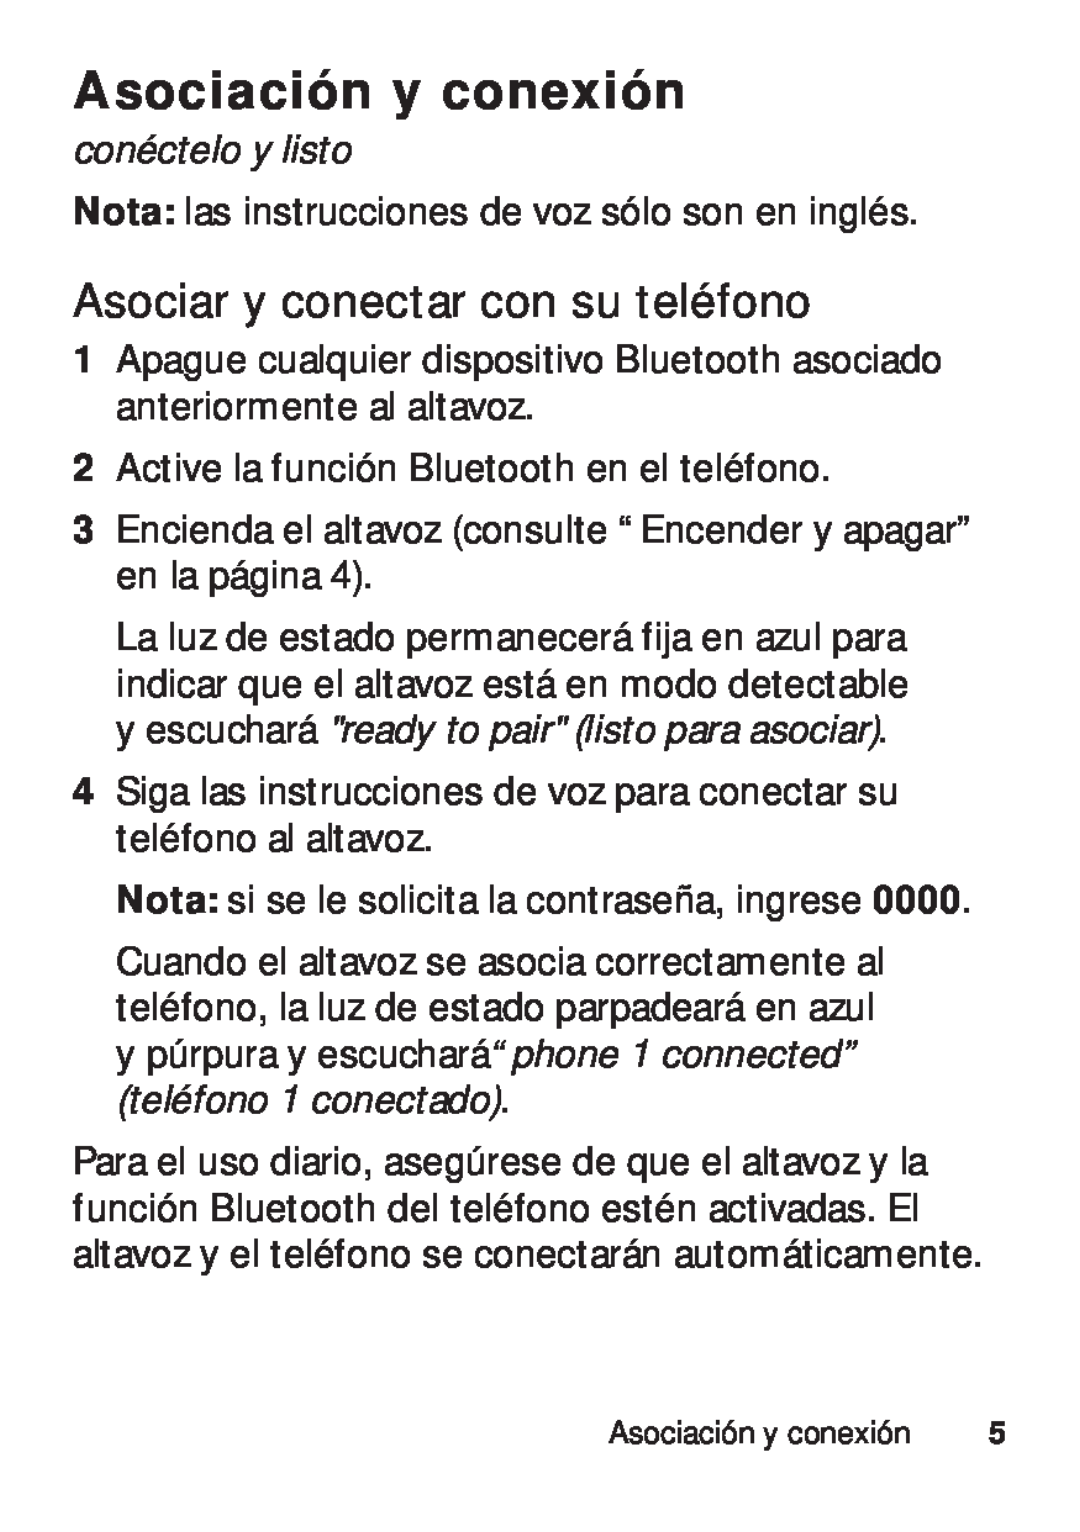 Motorola TX500 manual Asociación y conexión, Asociar y conectar con su teléfono, conéctelo y listo 